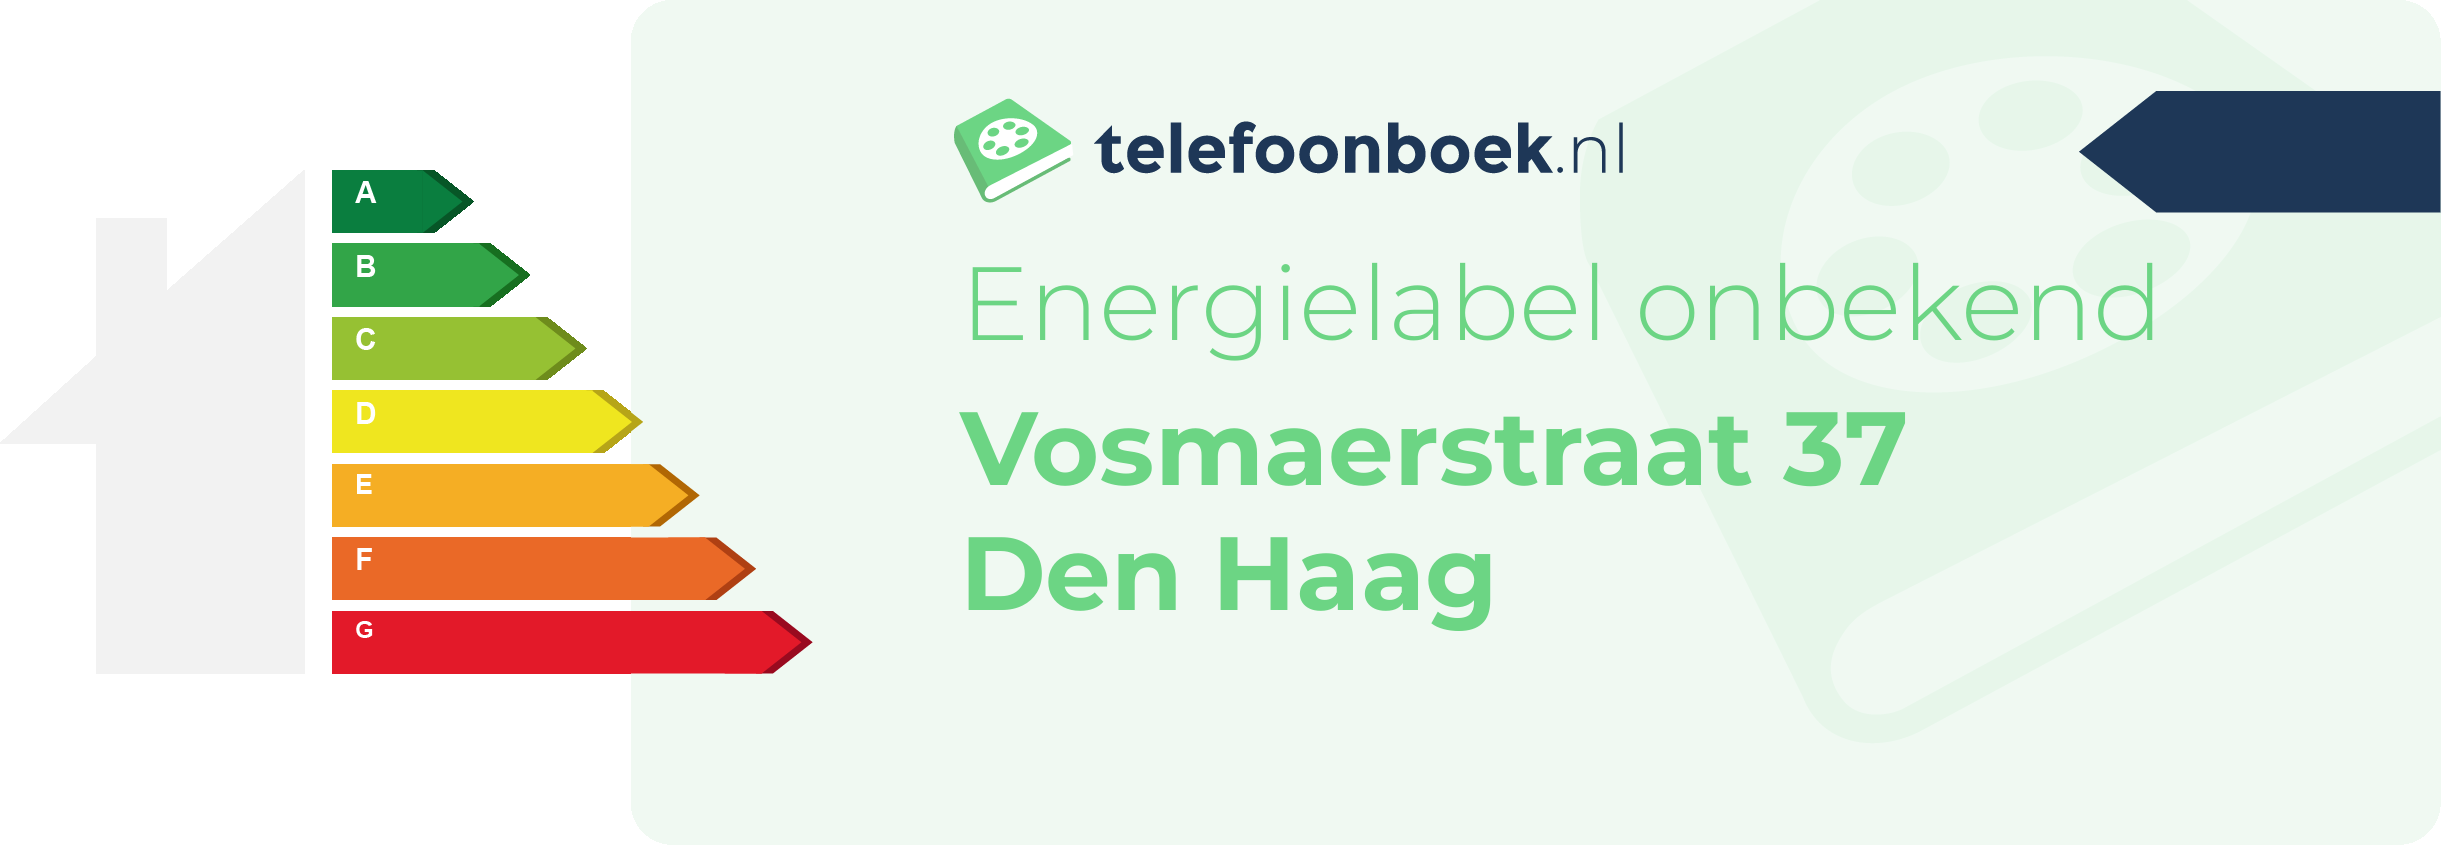 Energielabel Vosmaerstraat 37 Den Haag